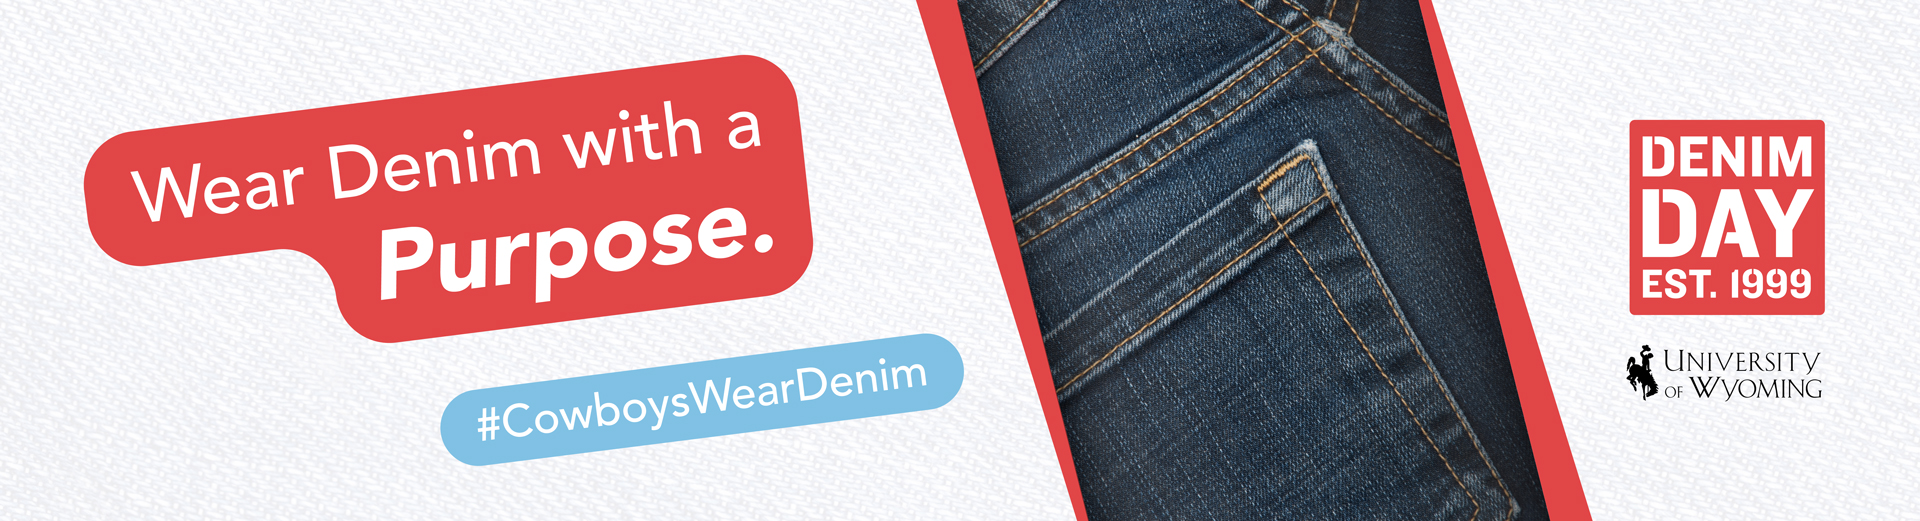 Wear Denim with a purpose # cowboys wear denim 